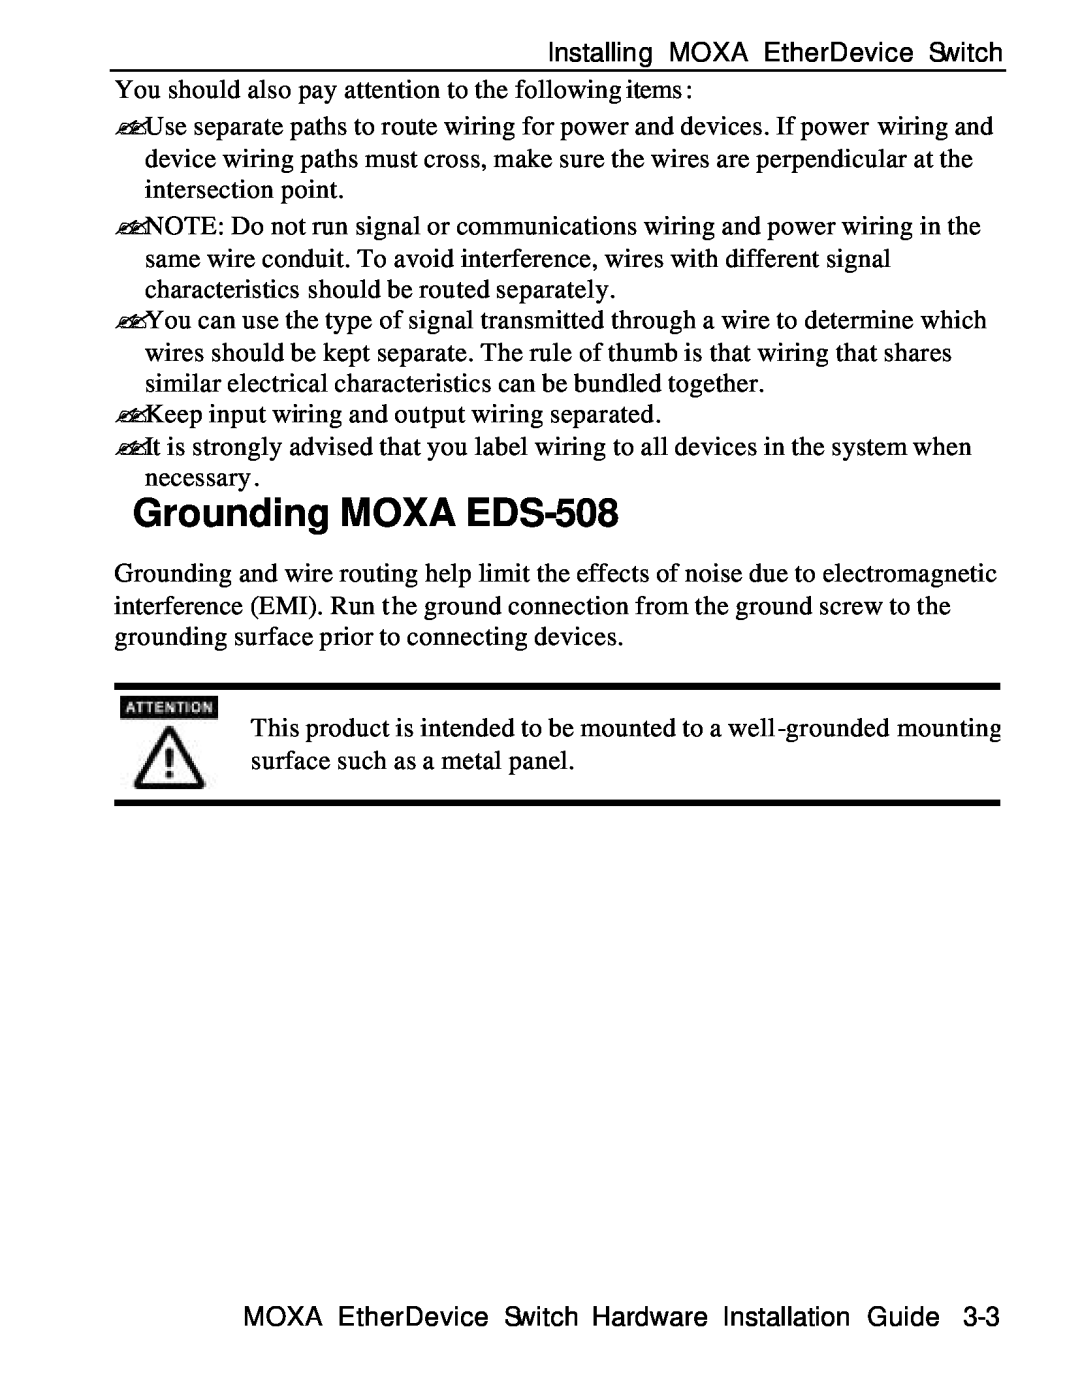 Moxa Technologies manual Grounding MOXA EDS-508 